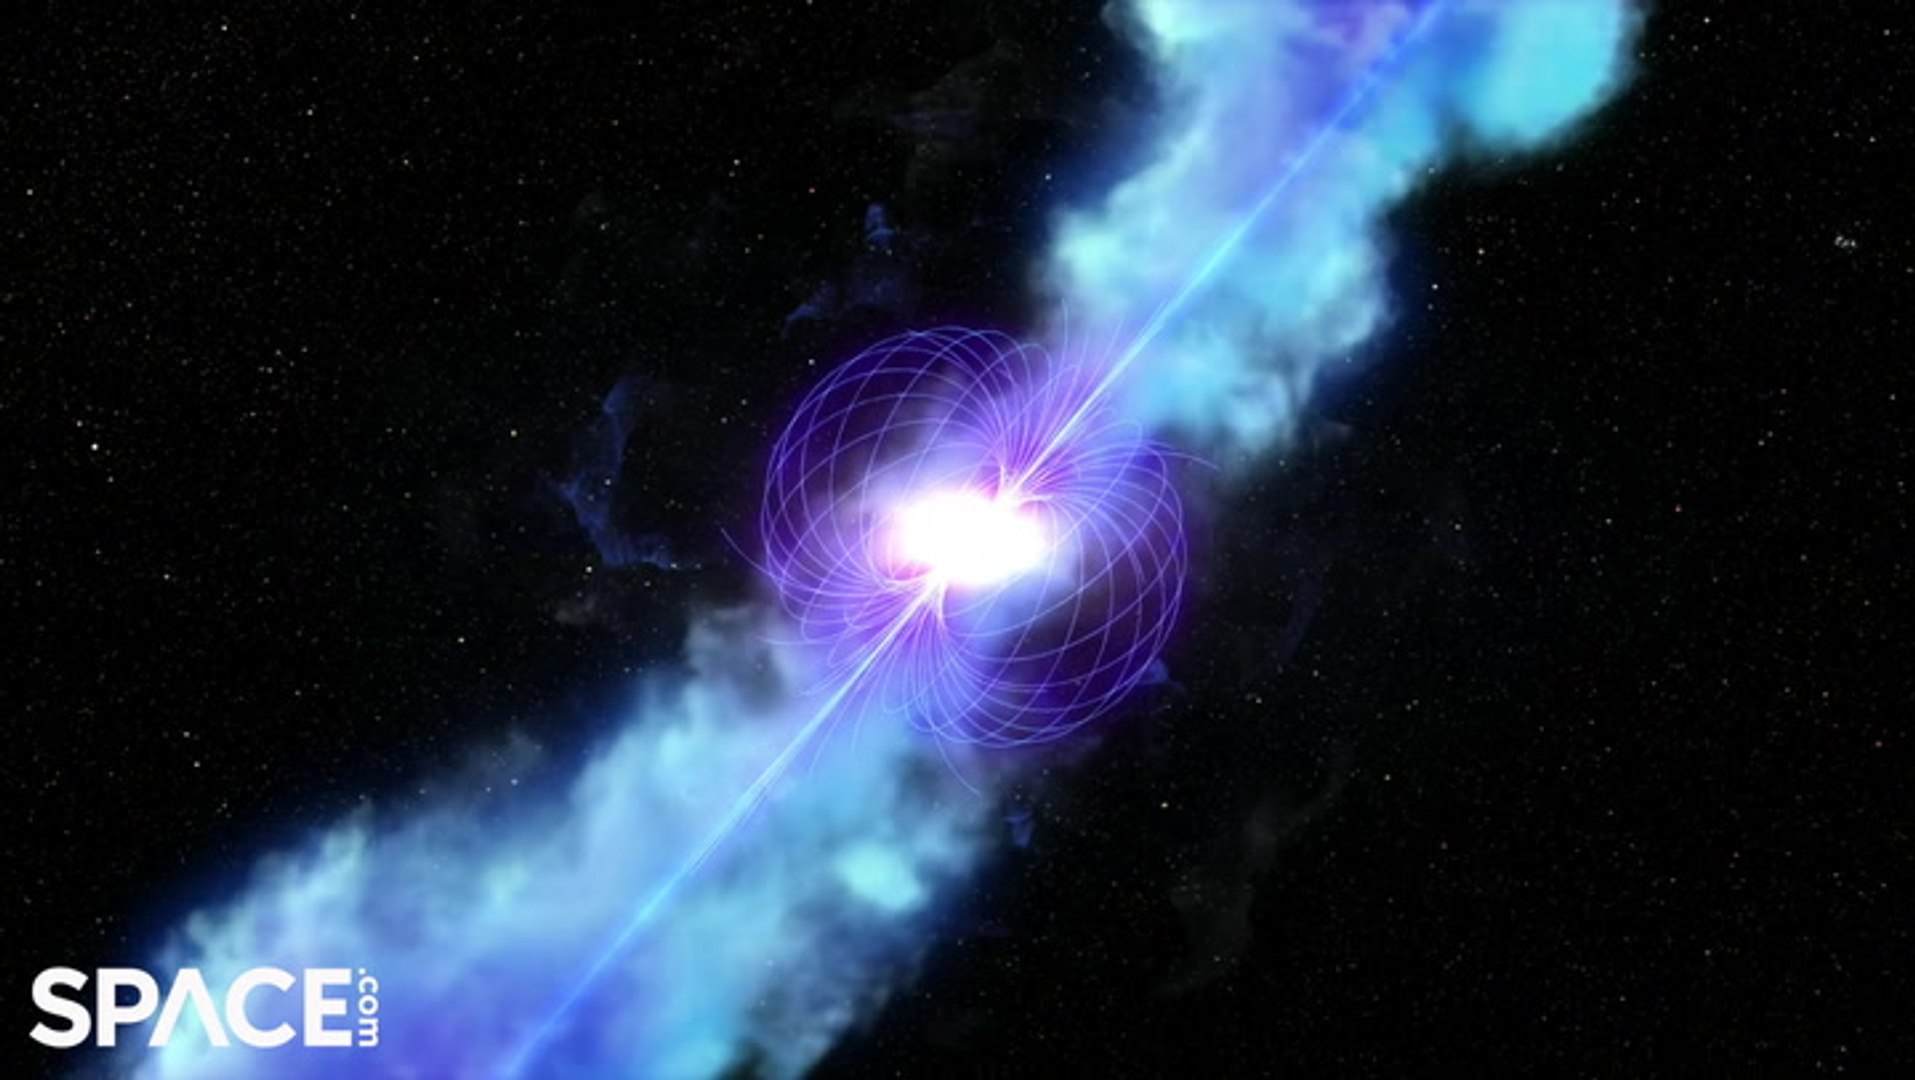 neutron star collision nasa